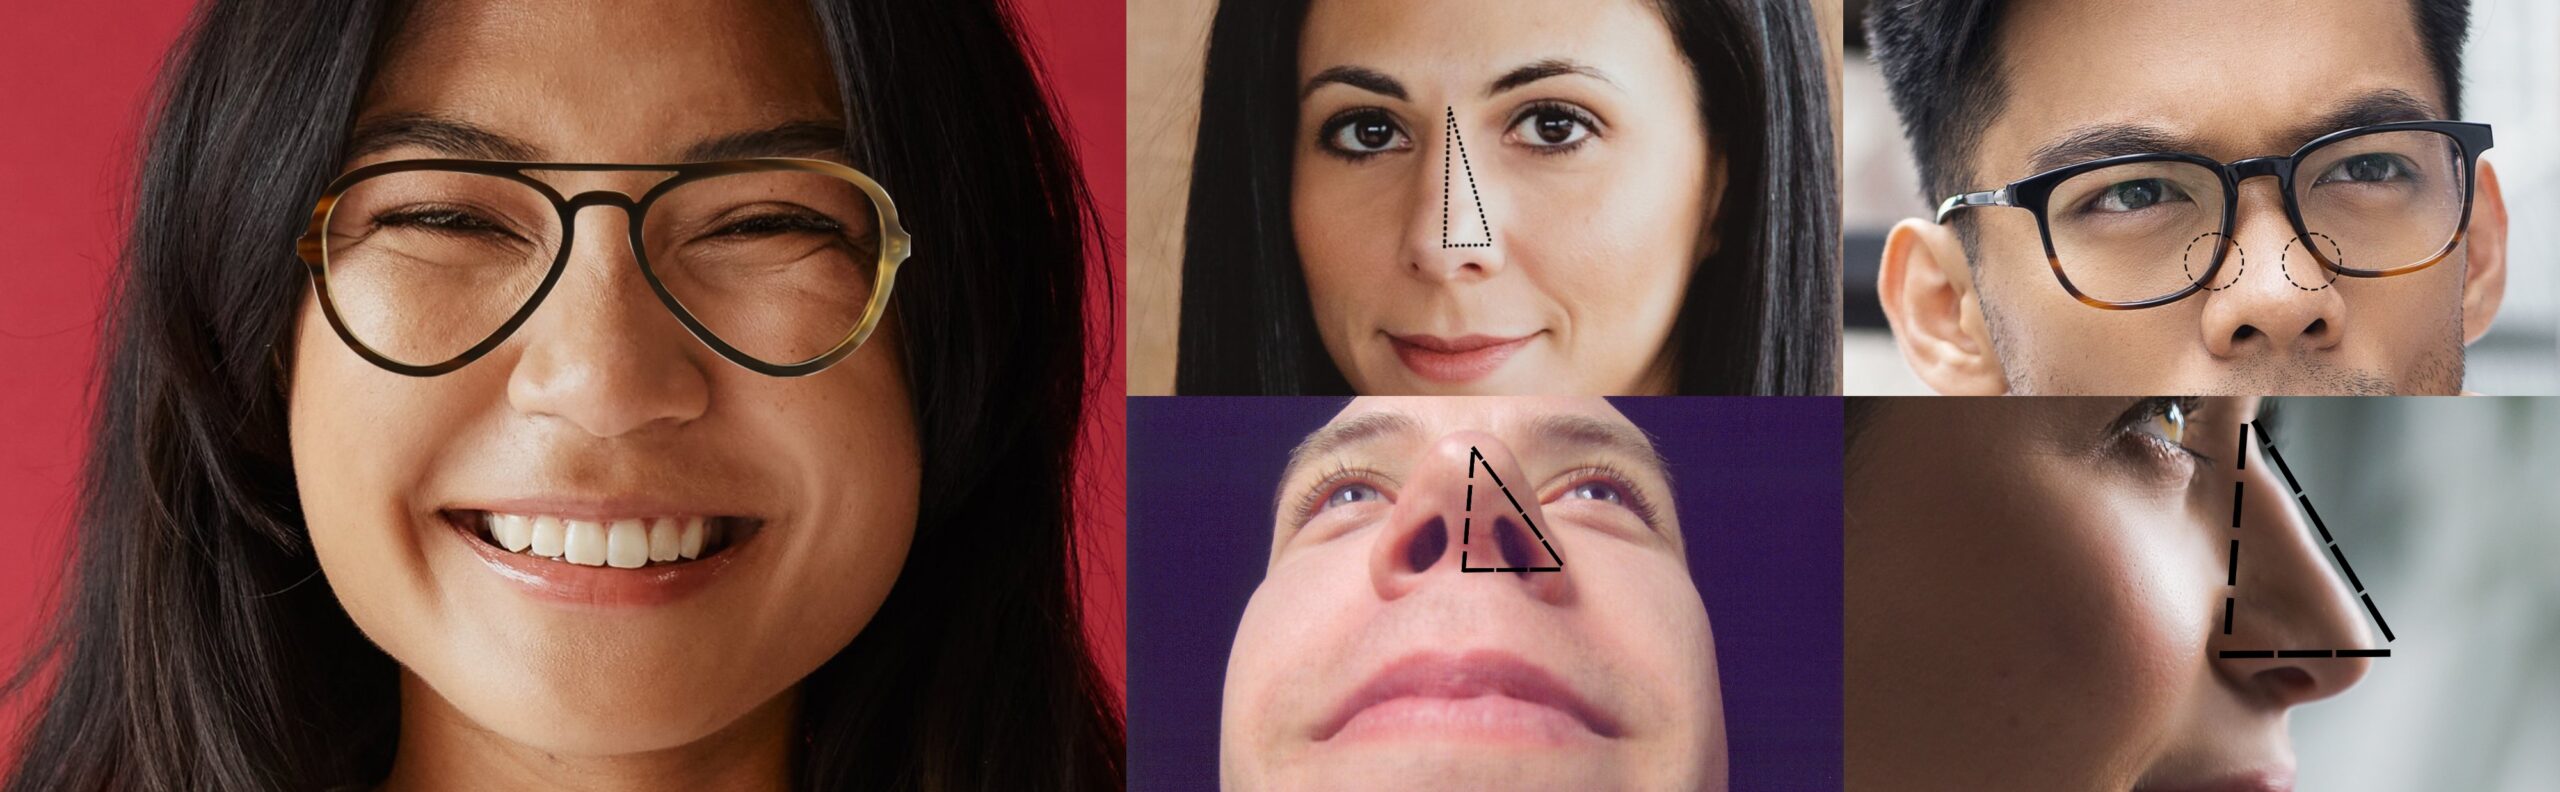 Nasal Angles